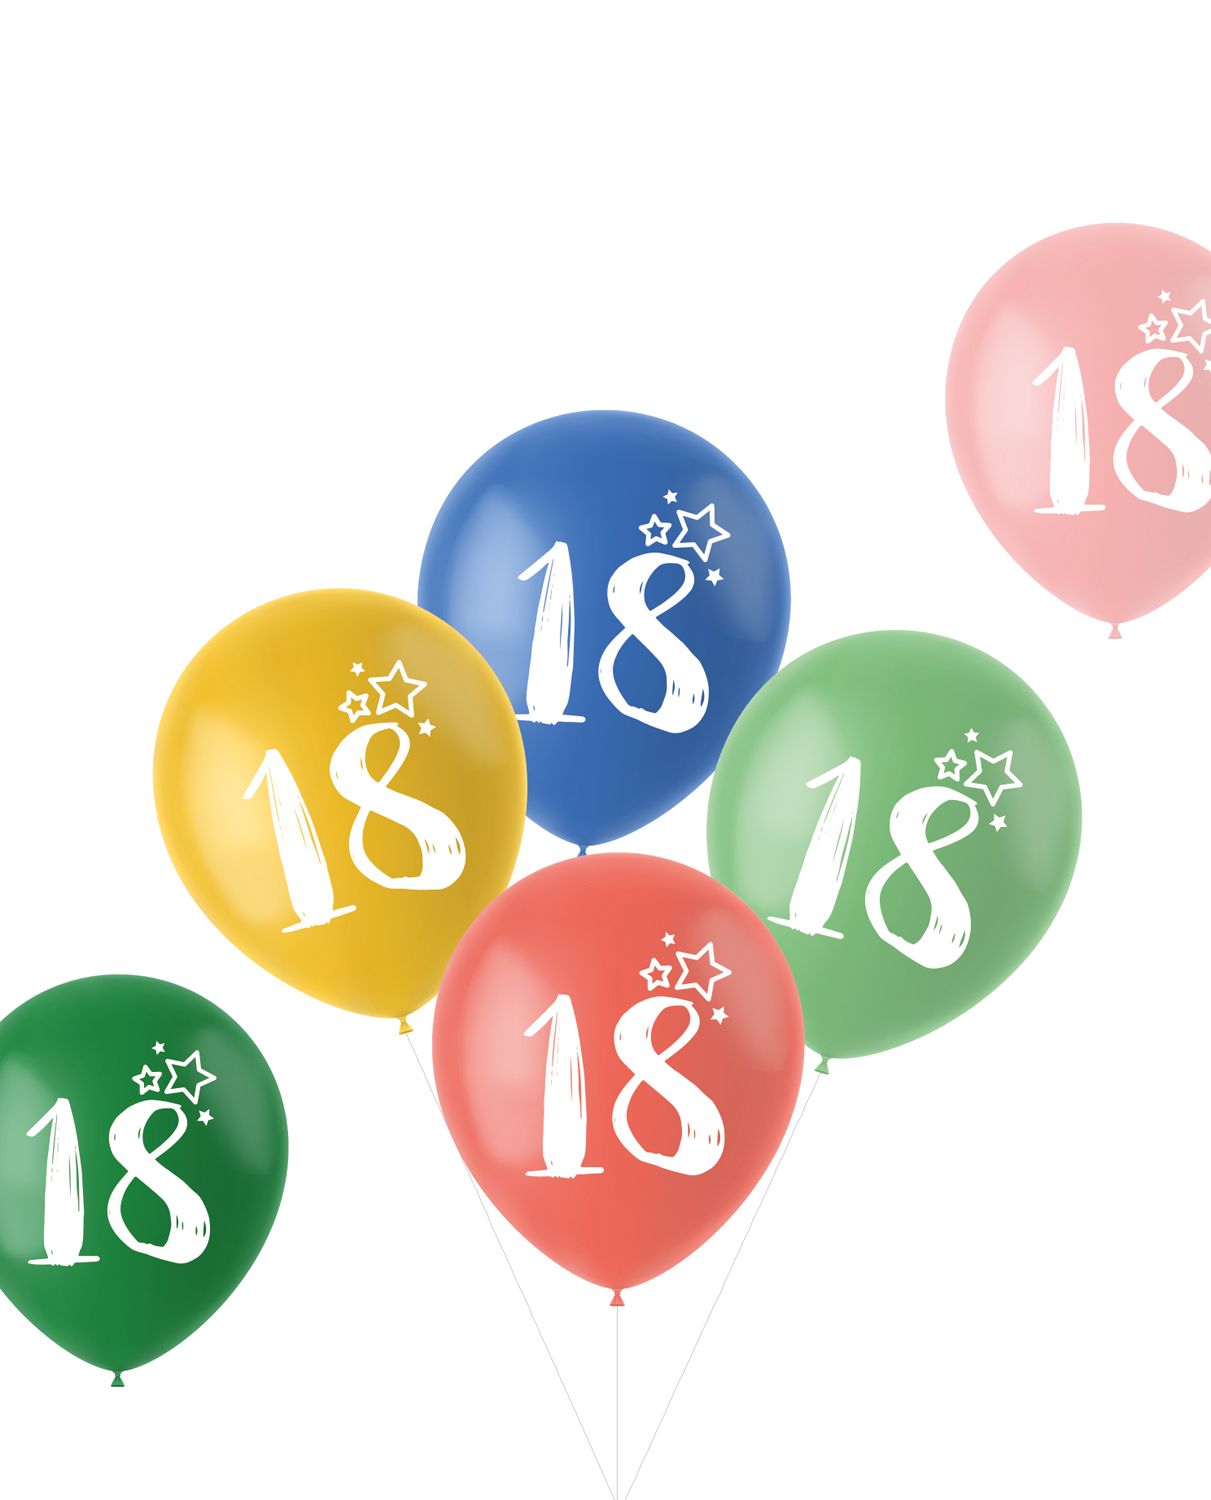 Retro verjaardag ballonnen 18 jaar 6 stuks